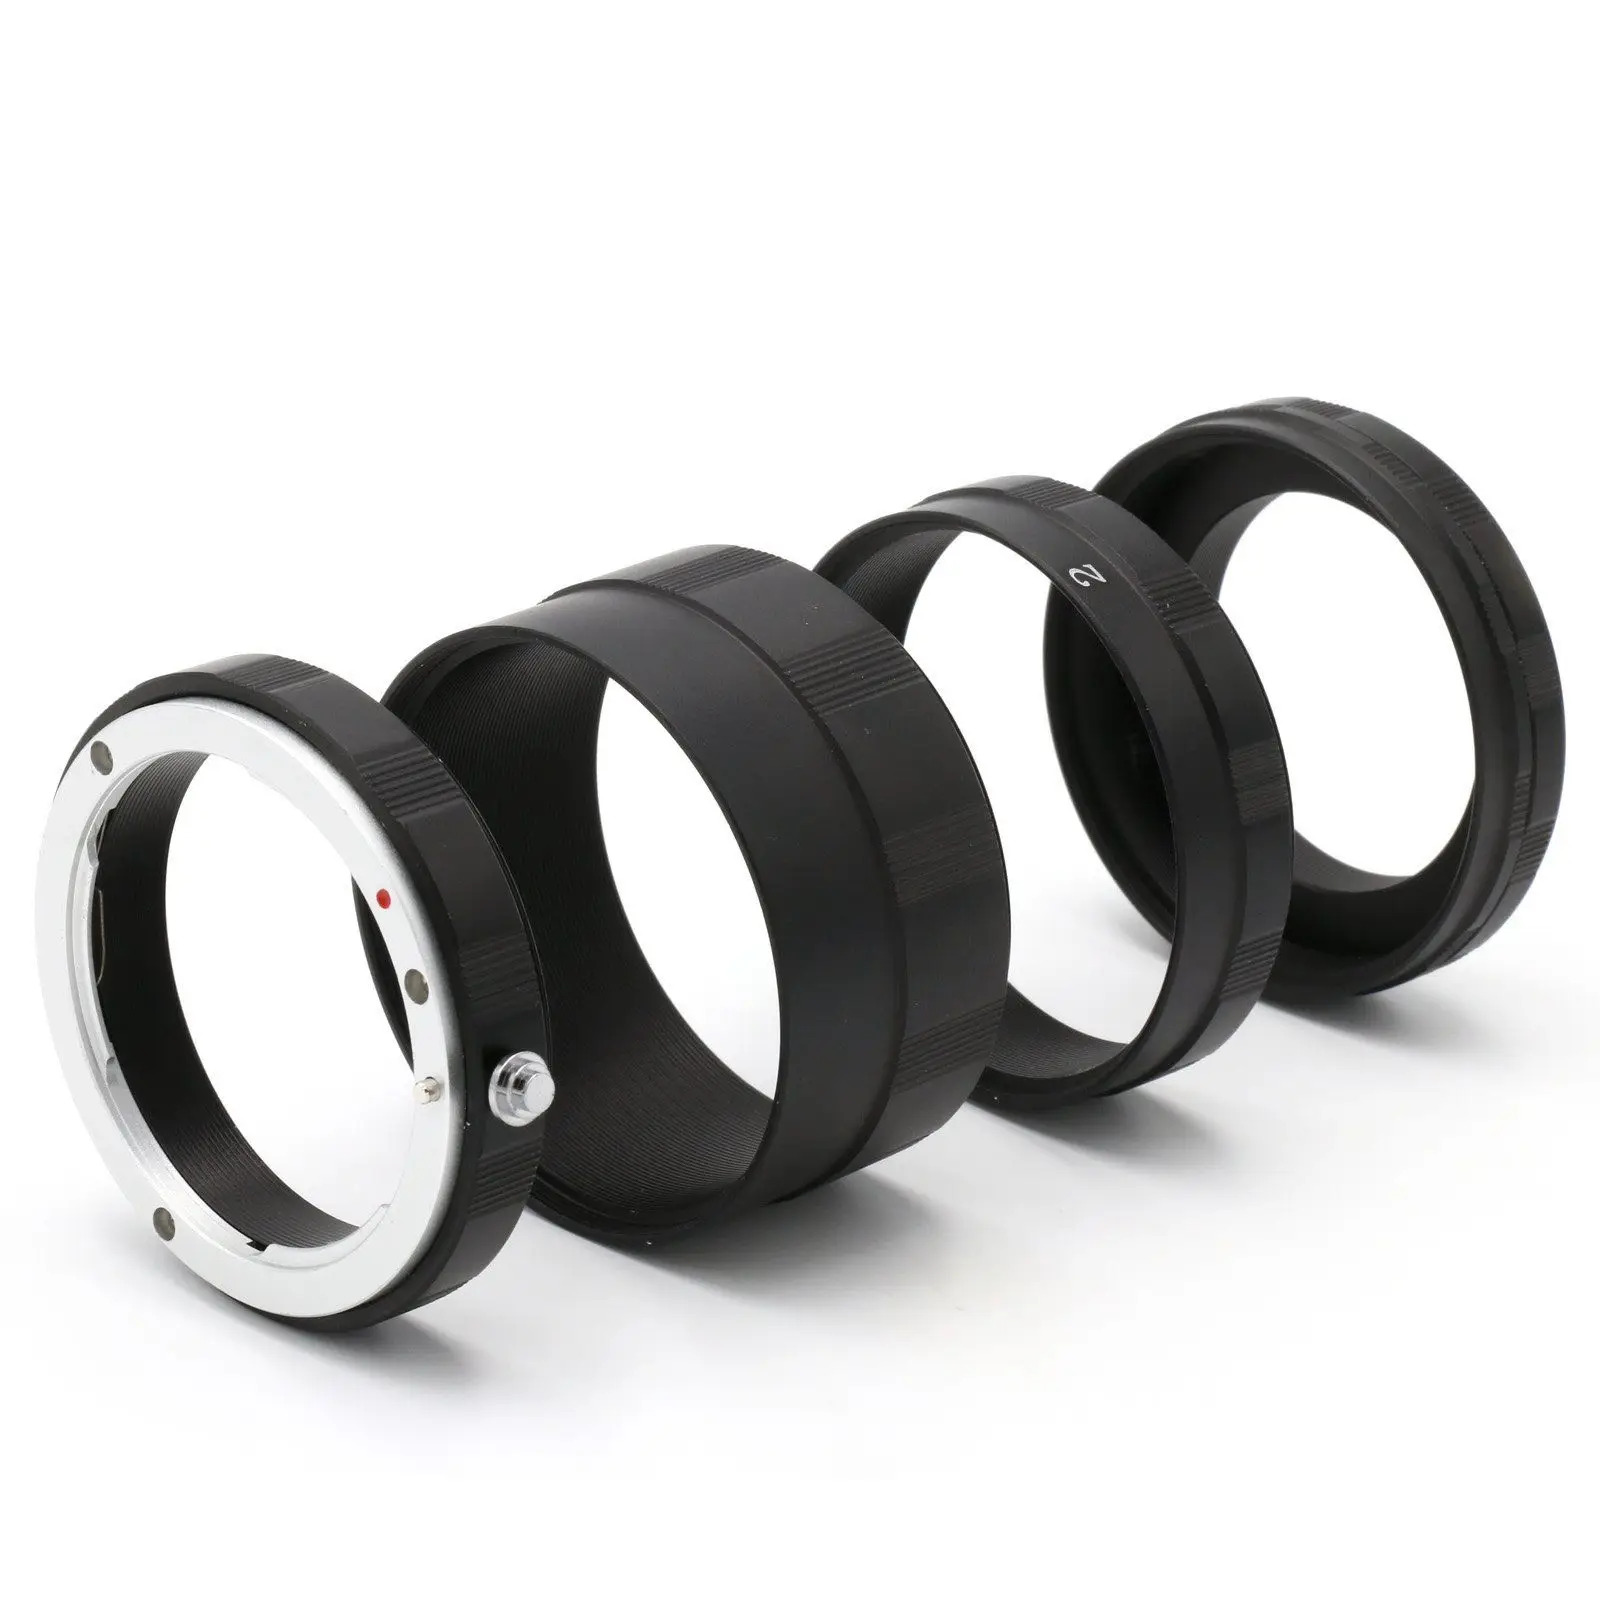 New 3 Macro Extension Tube Ring Lens Adapter for Nikon D800 D3100 D5000  D7000 D70 D50 D60 D100 Camera - AliExpress